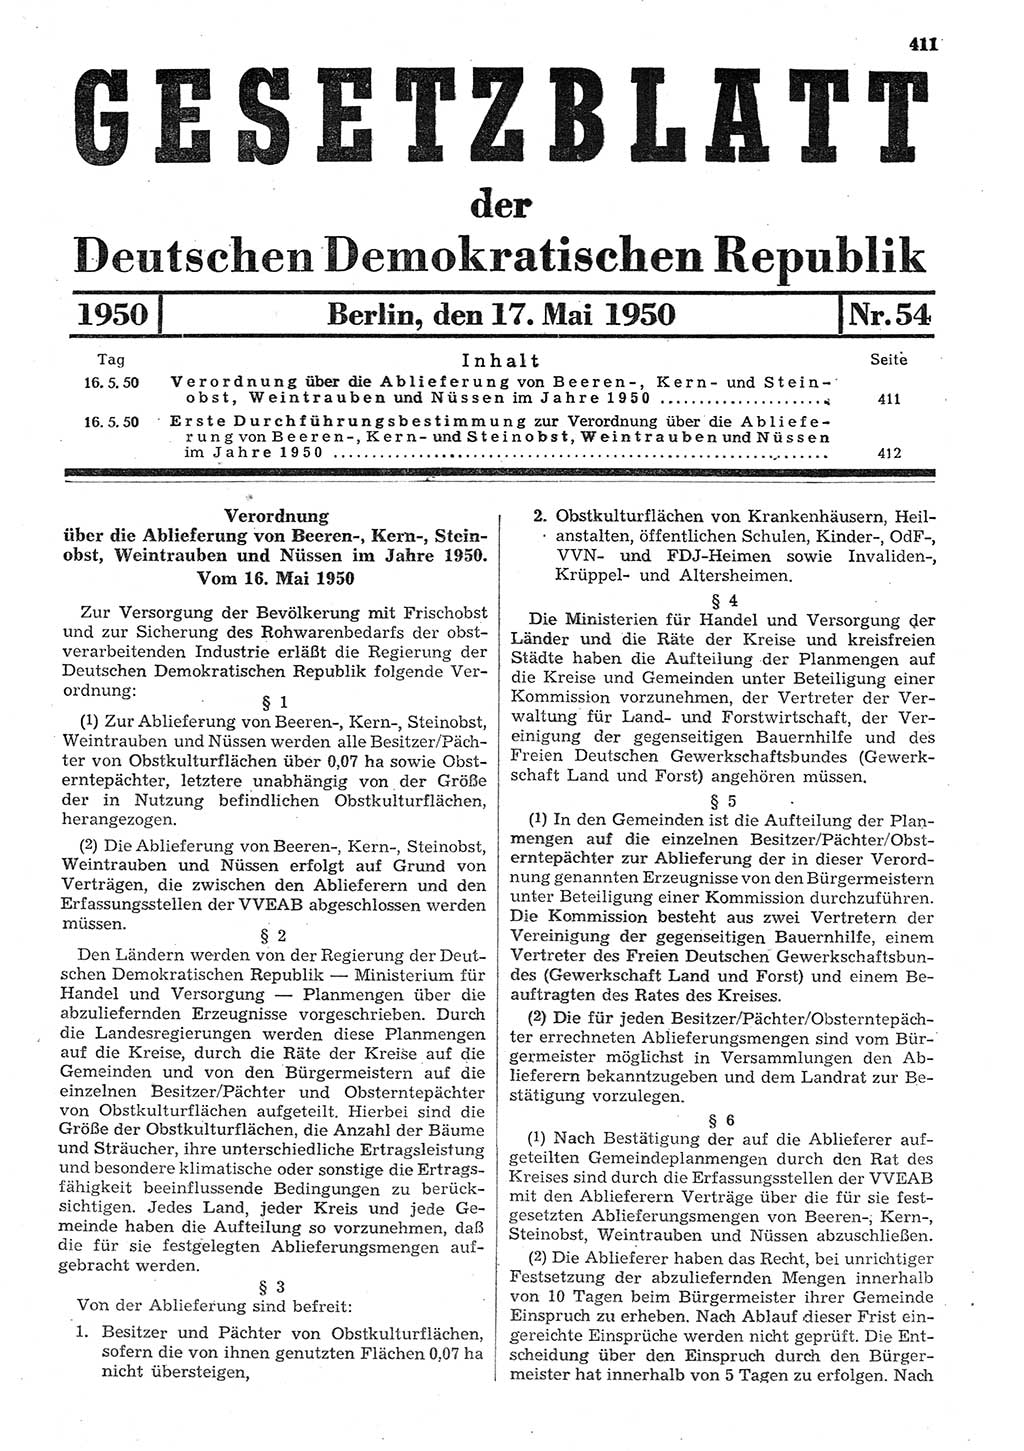 Gesetzblatt (GBl.) der Deutschen Demokratischen Republik (DDR) 1950, Seite 411 (GBl. DDR 1950, S. 411)